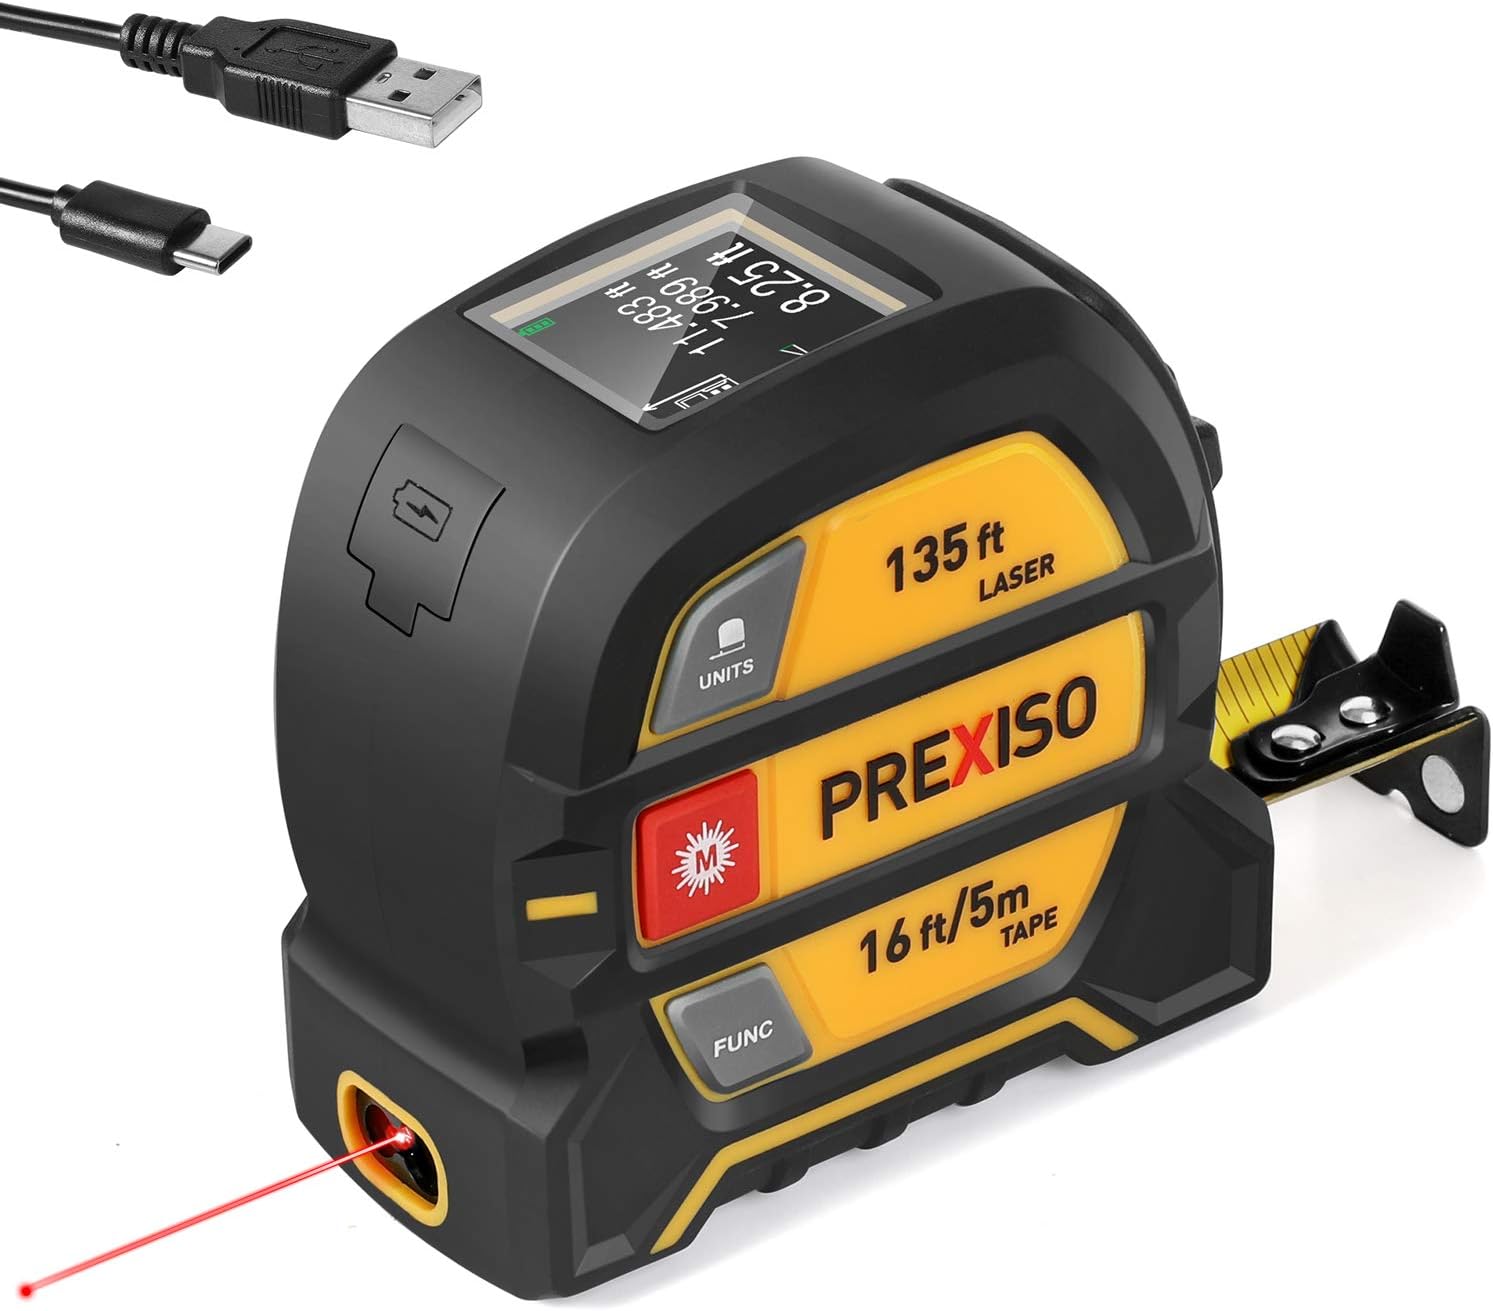 PREXISO Laser Tape Measure